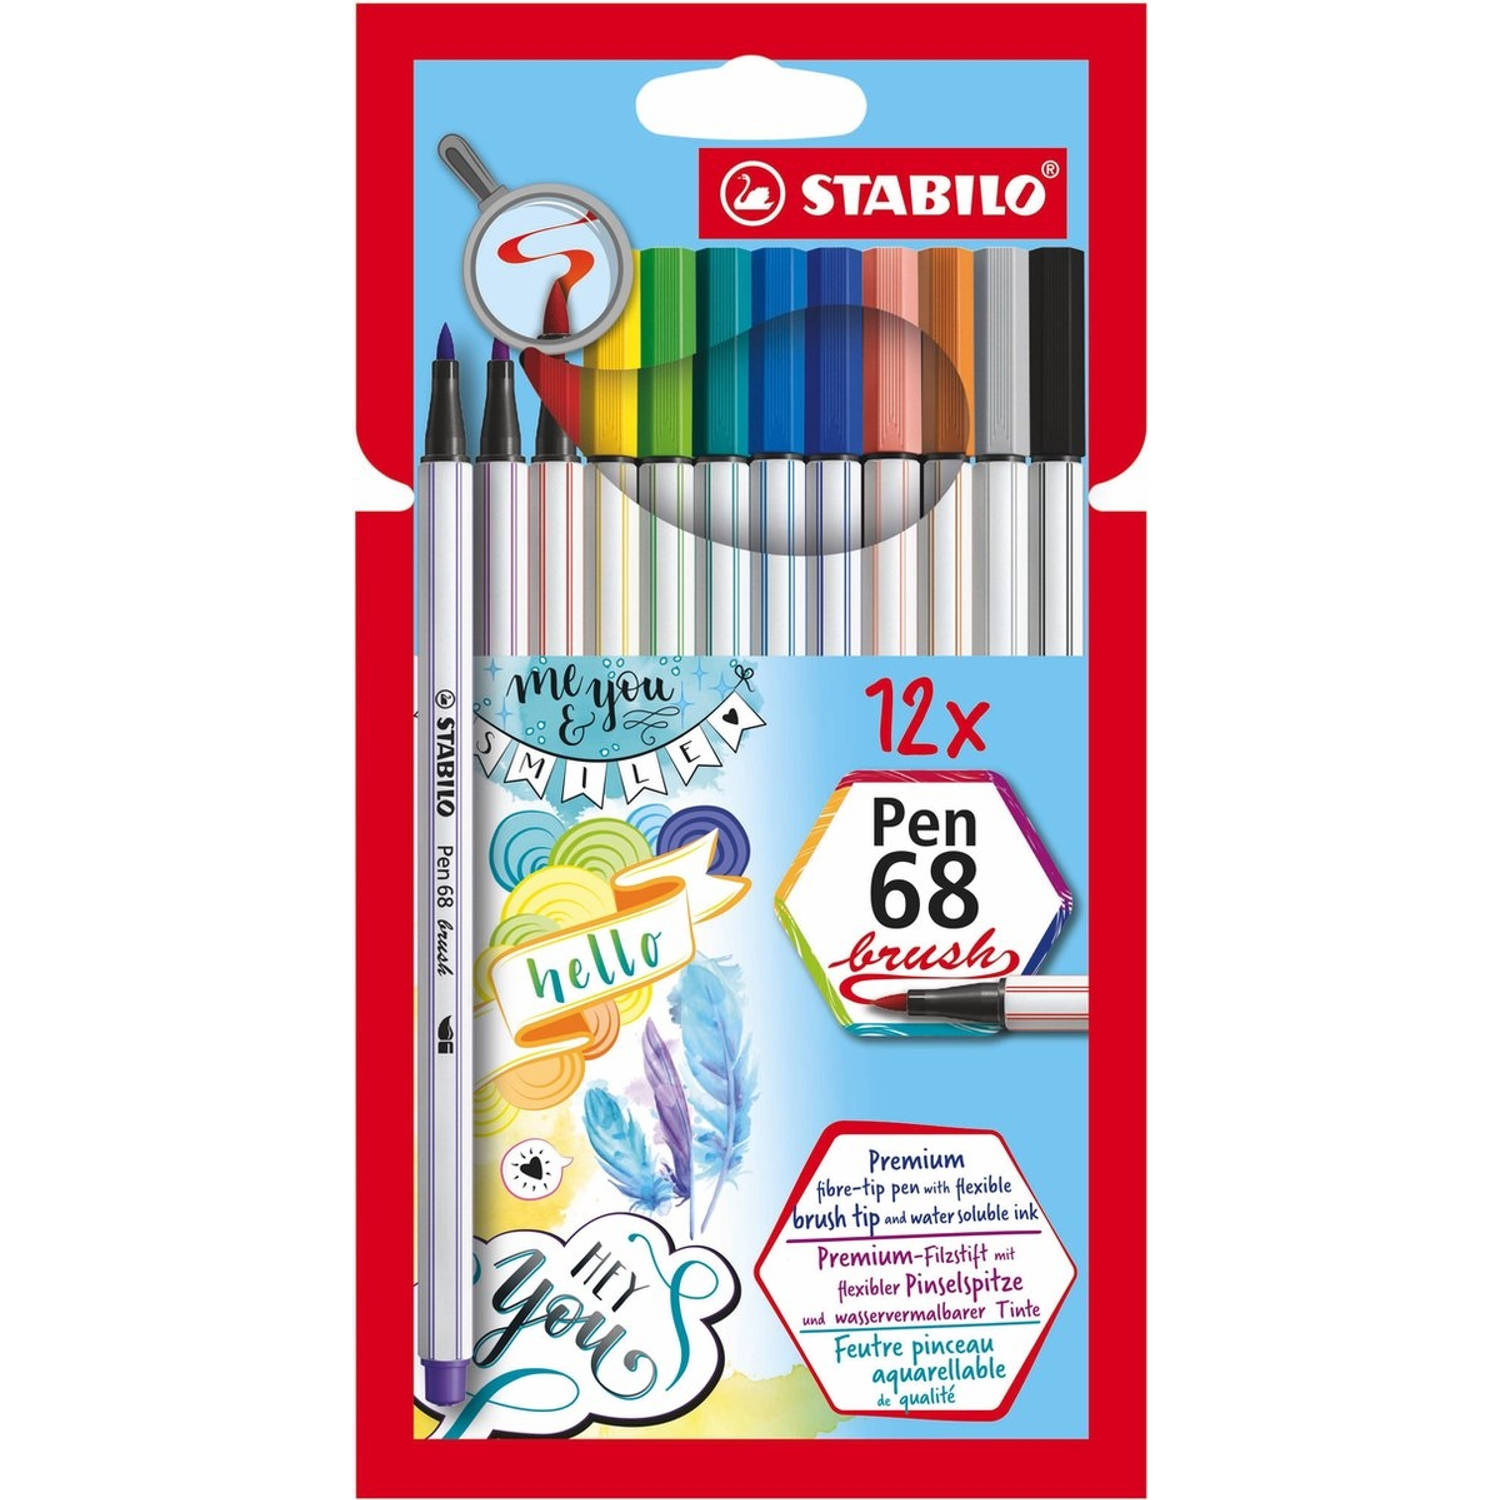 STABILO Pen 68 brush etui 12 kleuren